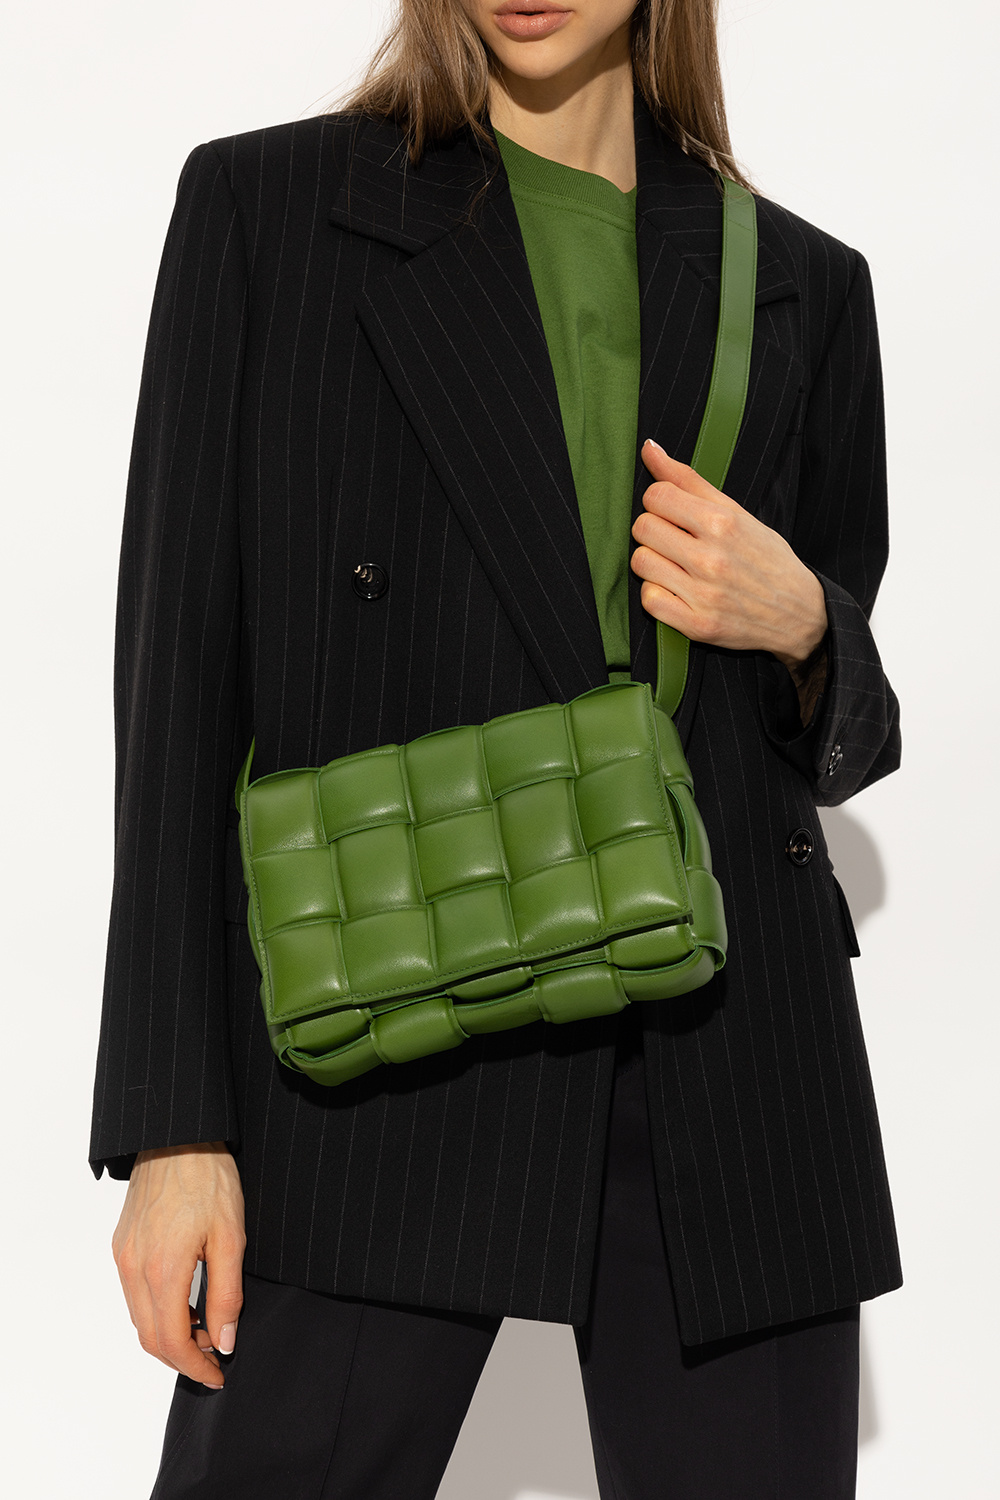 Bottega Veneta Green Padded Cassette Shoulder Bag for Women